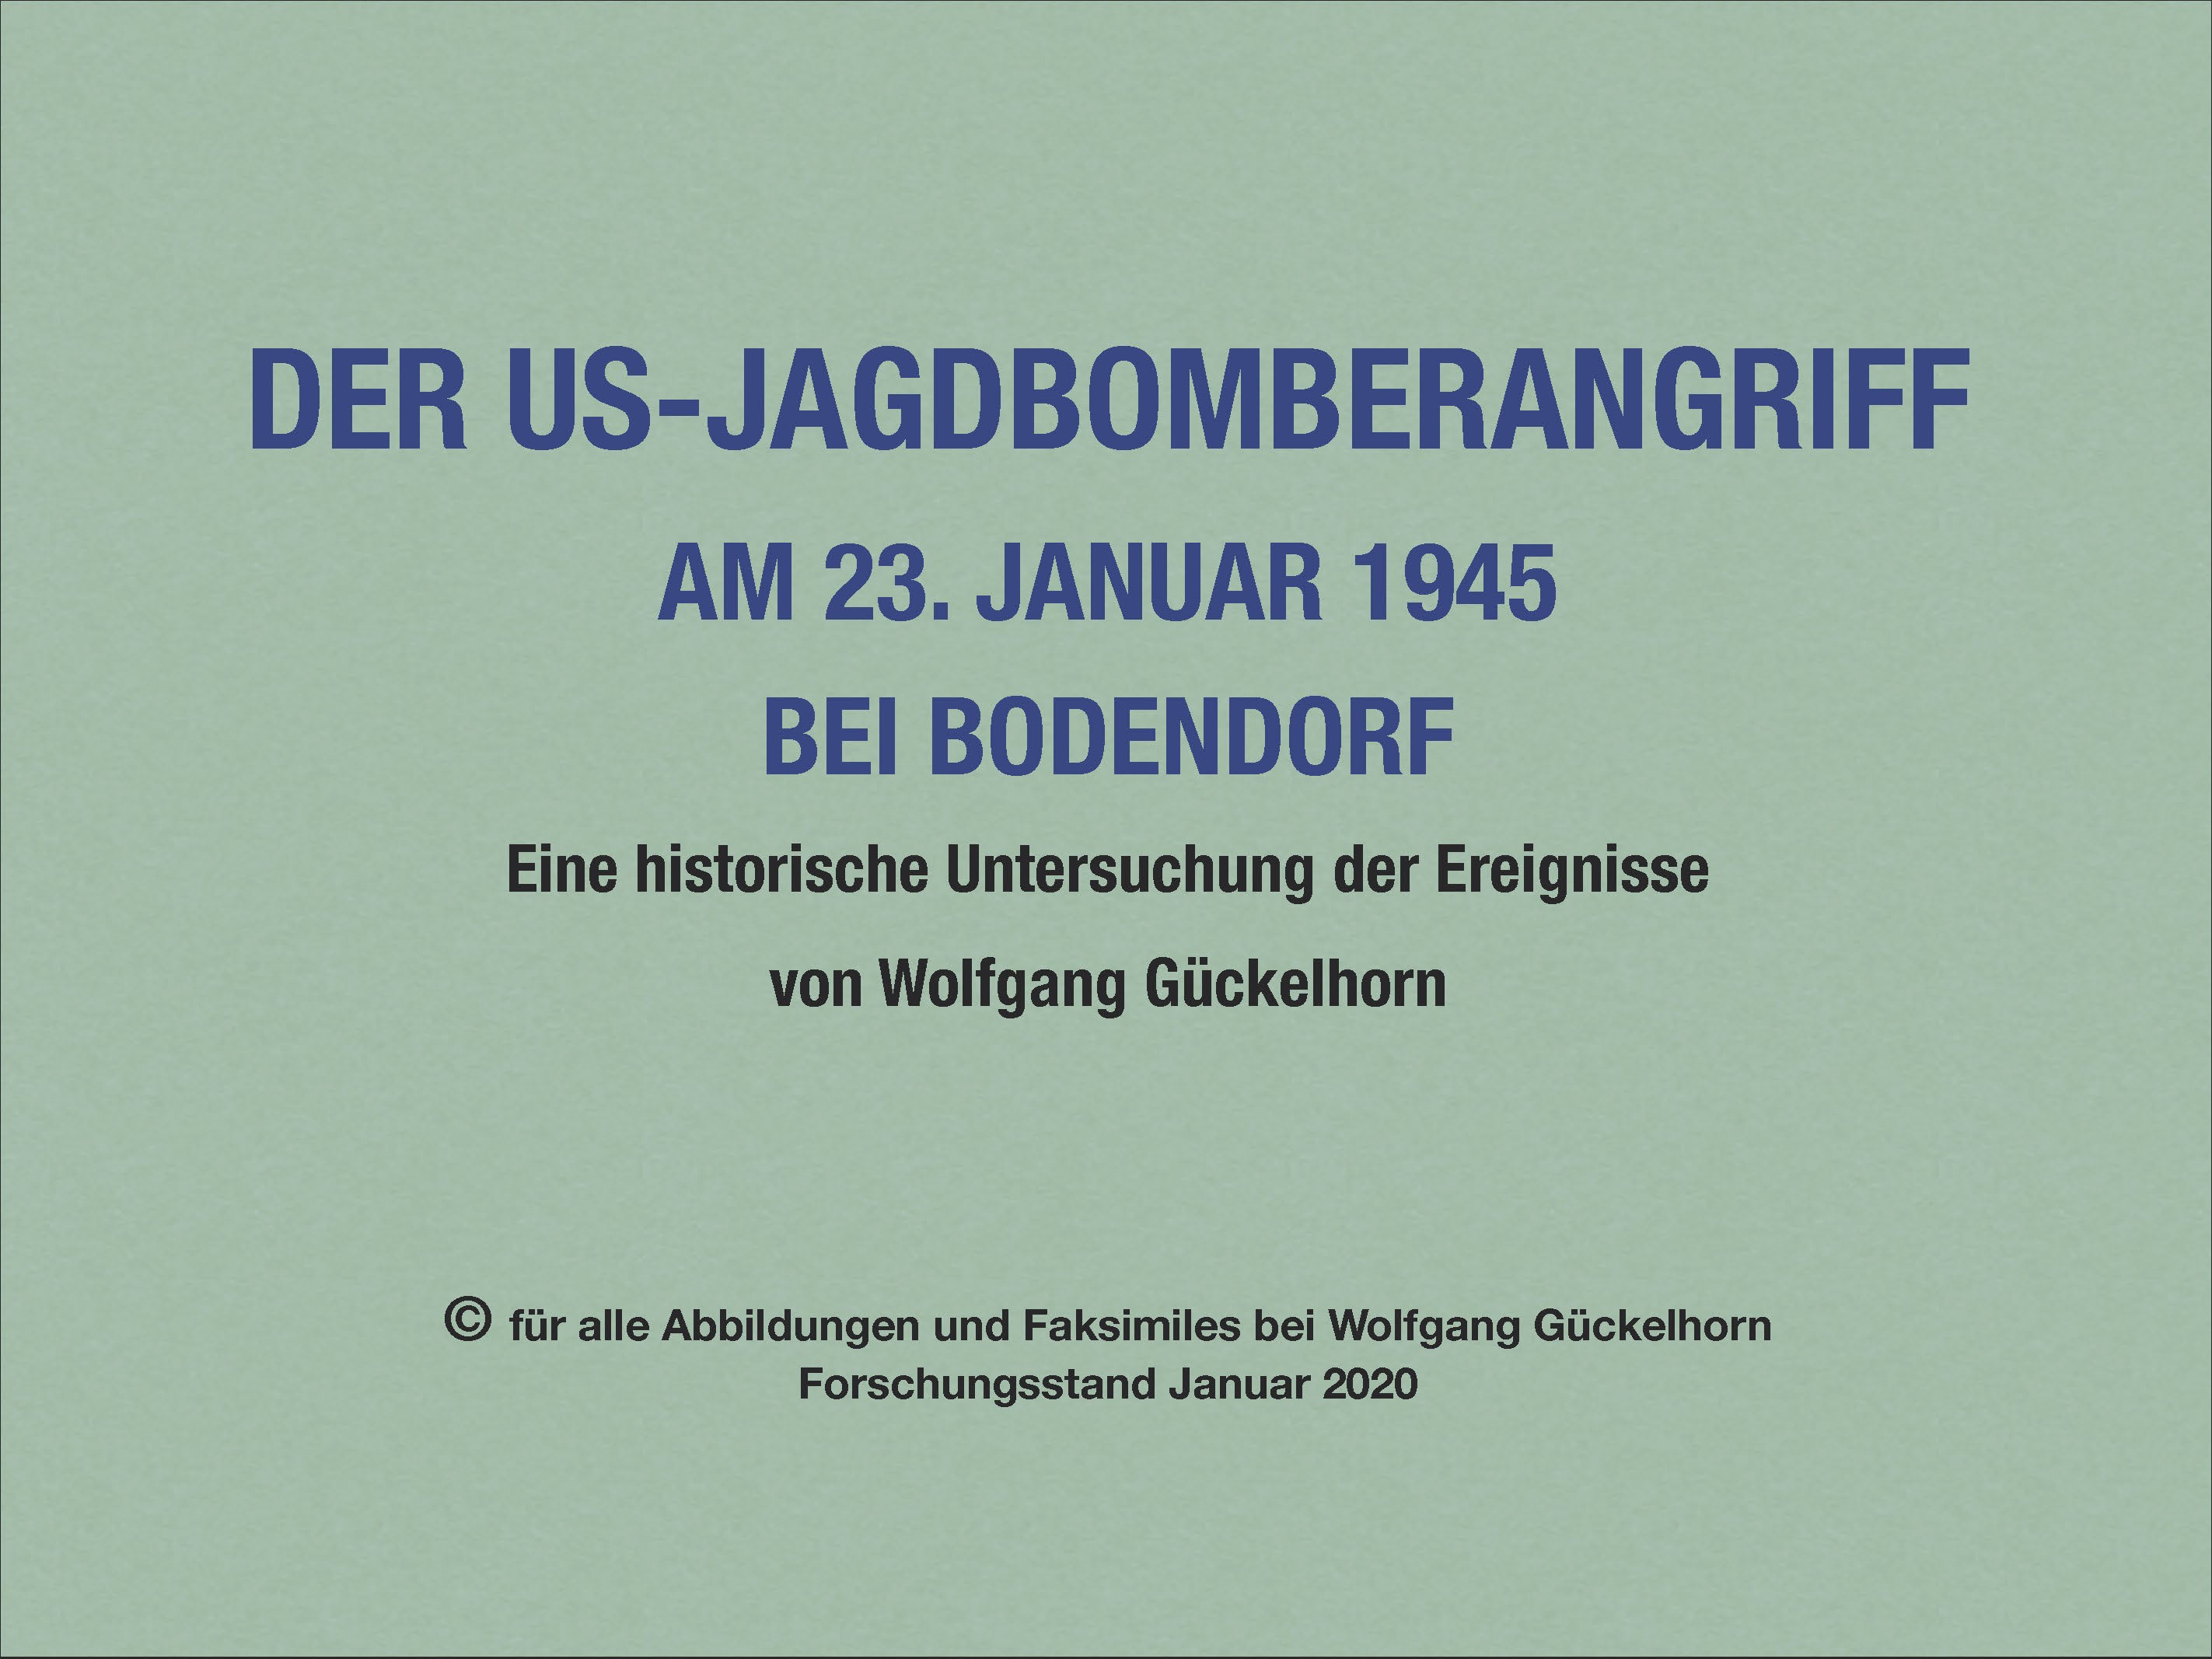 Vortrag mit Einzeldateien zum US-Jagdbomberangriff am 23. Januar 1945 bei Bodendorf (Heimatmuseum und -Archiv Bad Bodendorf CC BY-NC-SA)